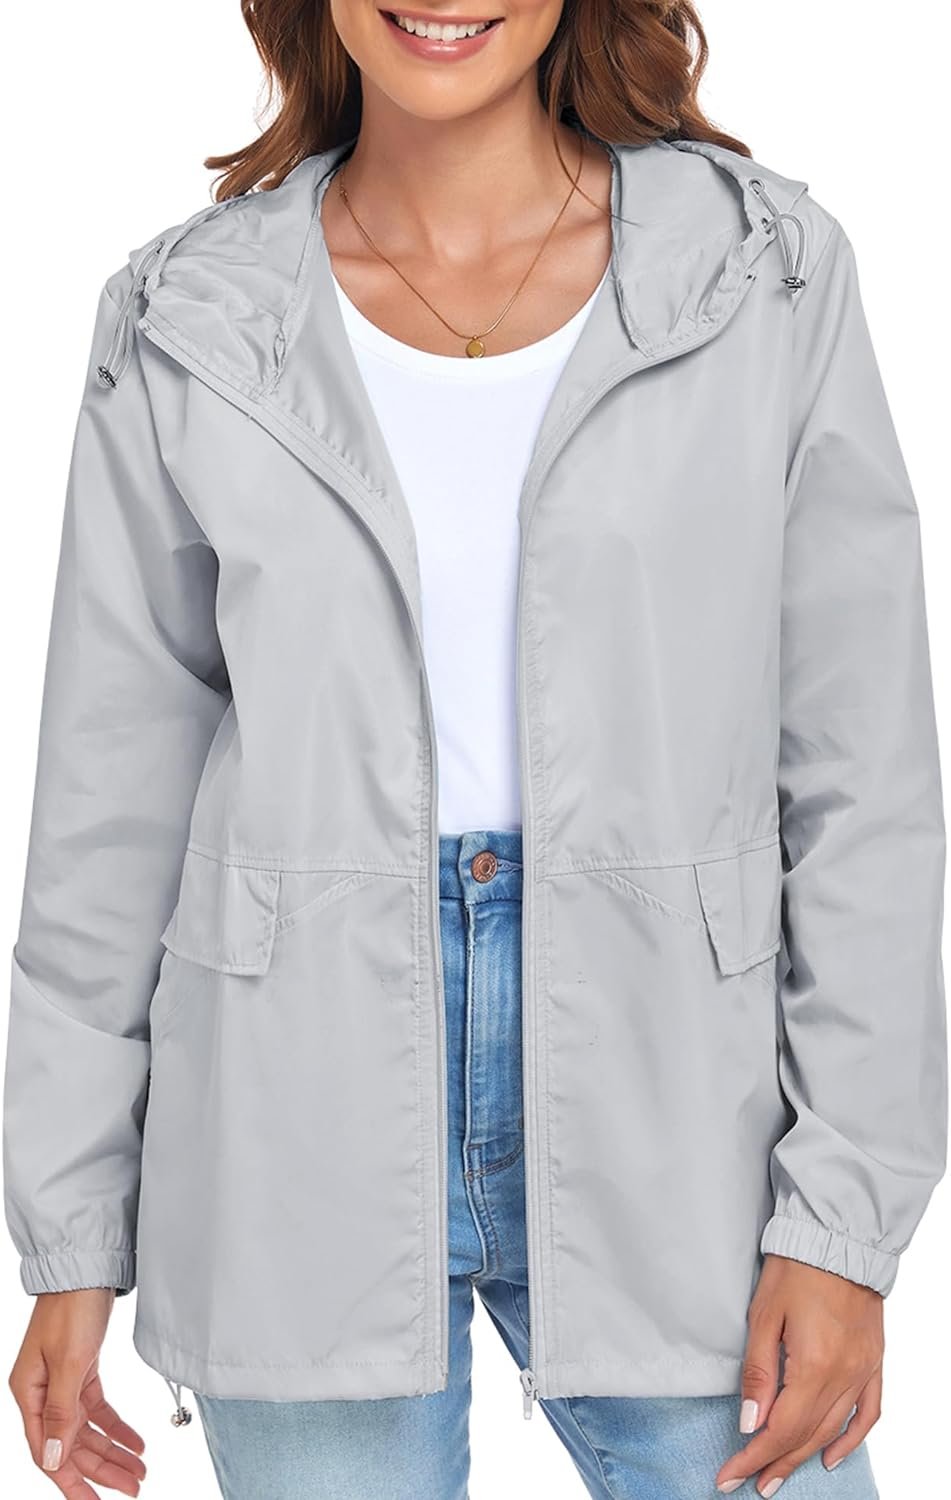 Womens Lightweight Raincoat Waterproof Packable Outdoor Windproof Hooded Active Rain Jacket S-XXL